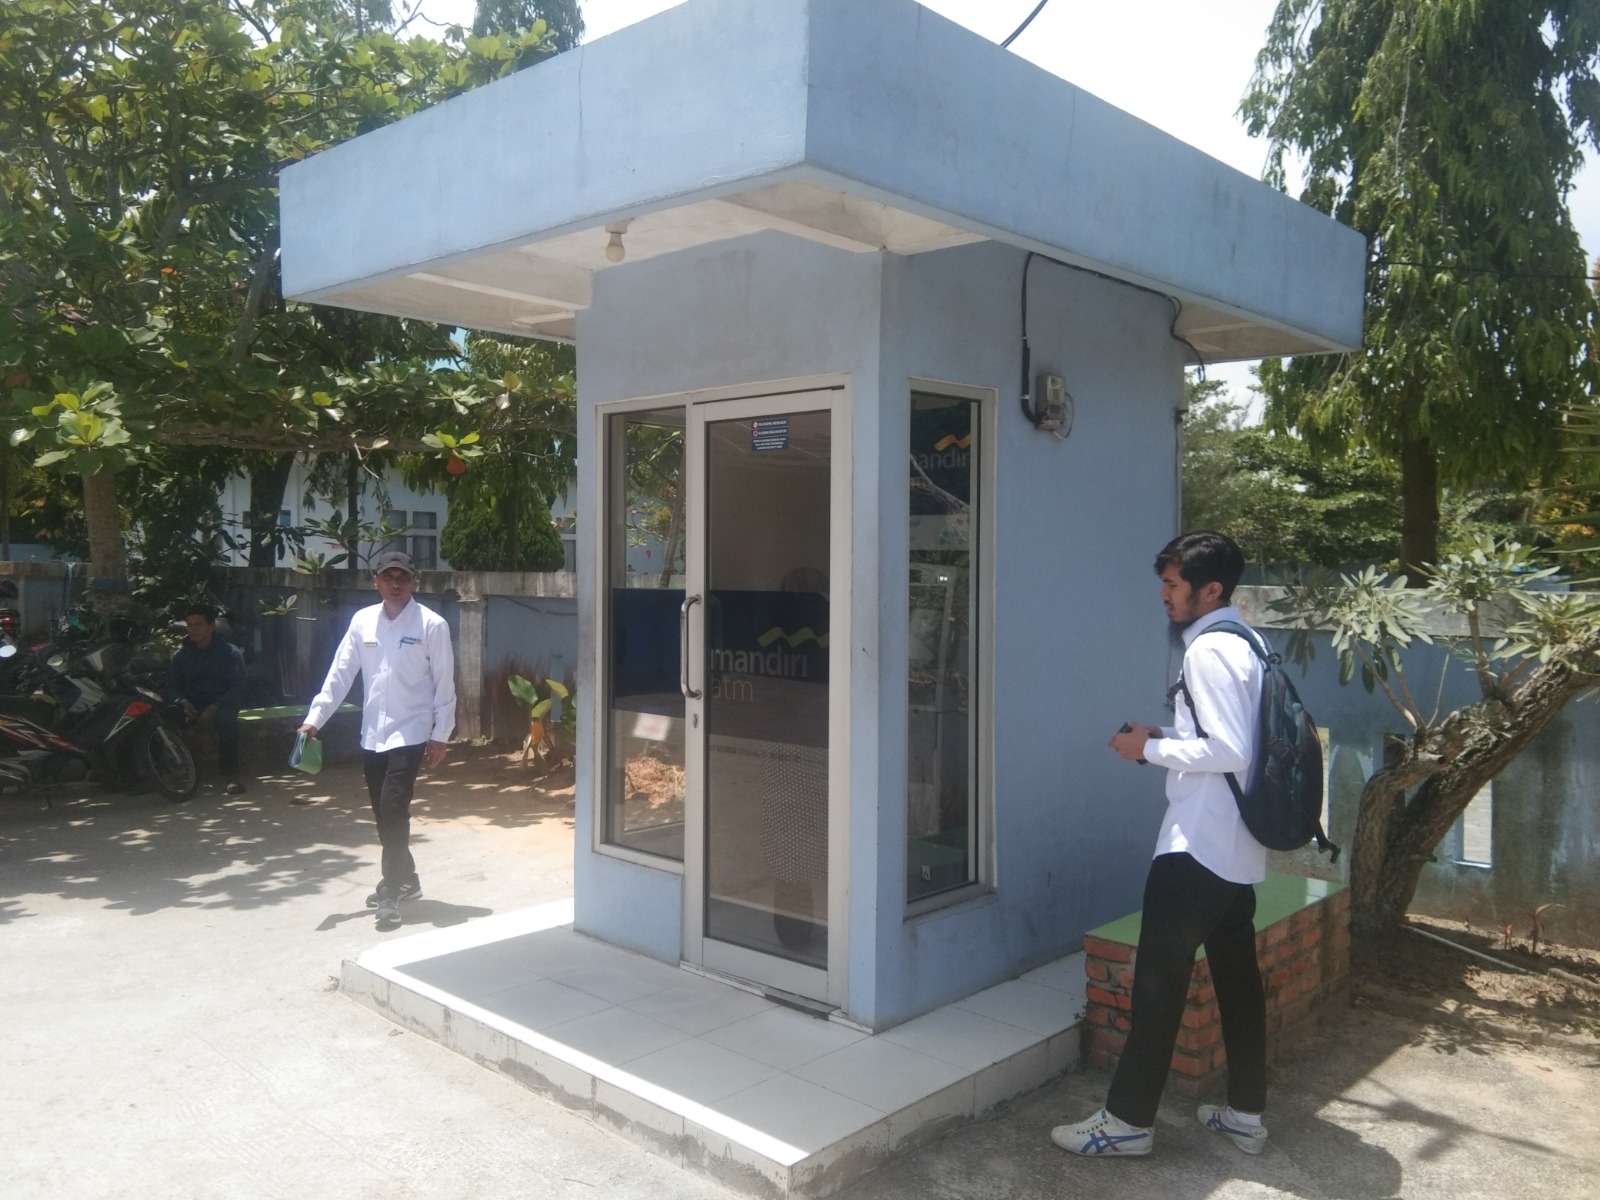 Analisis Pasar Sewa Ruang ATM: Memahami Perilaku Pemilihan Lokasi Penempatan Mesin ATM di Kota Pekanbaru